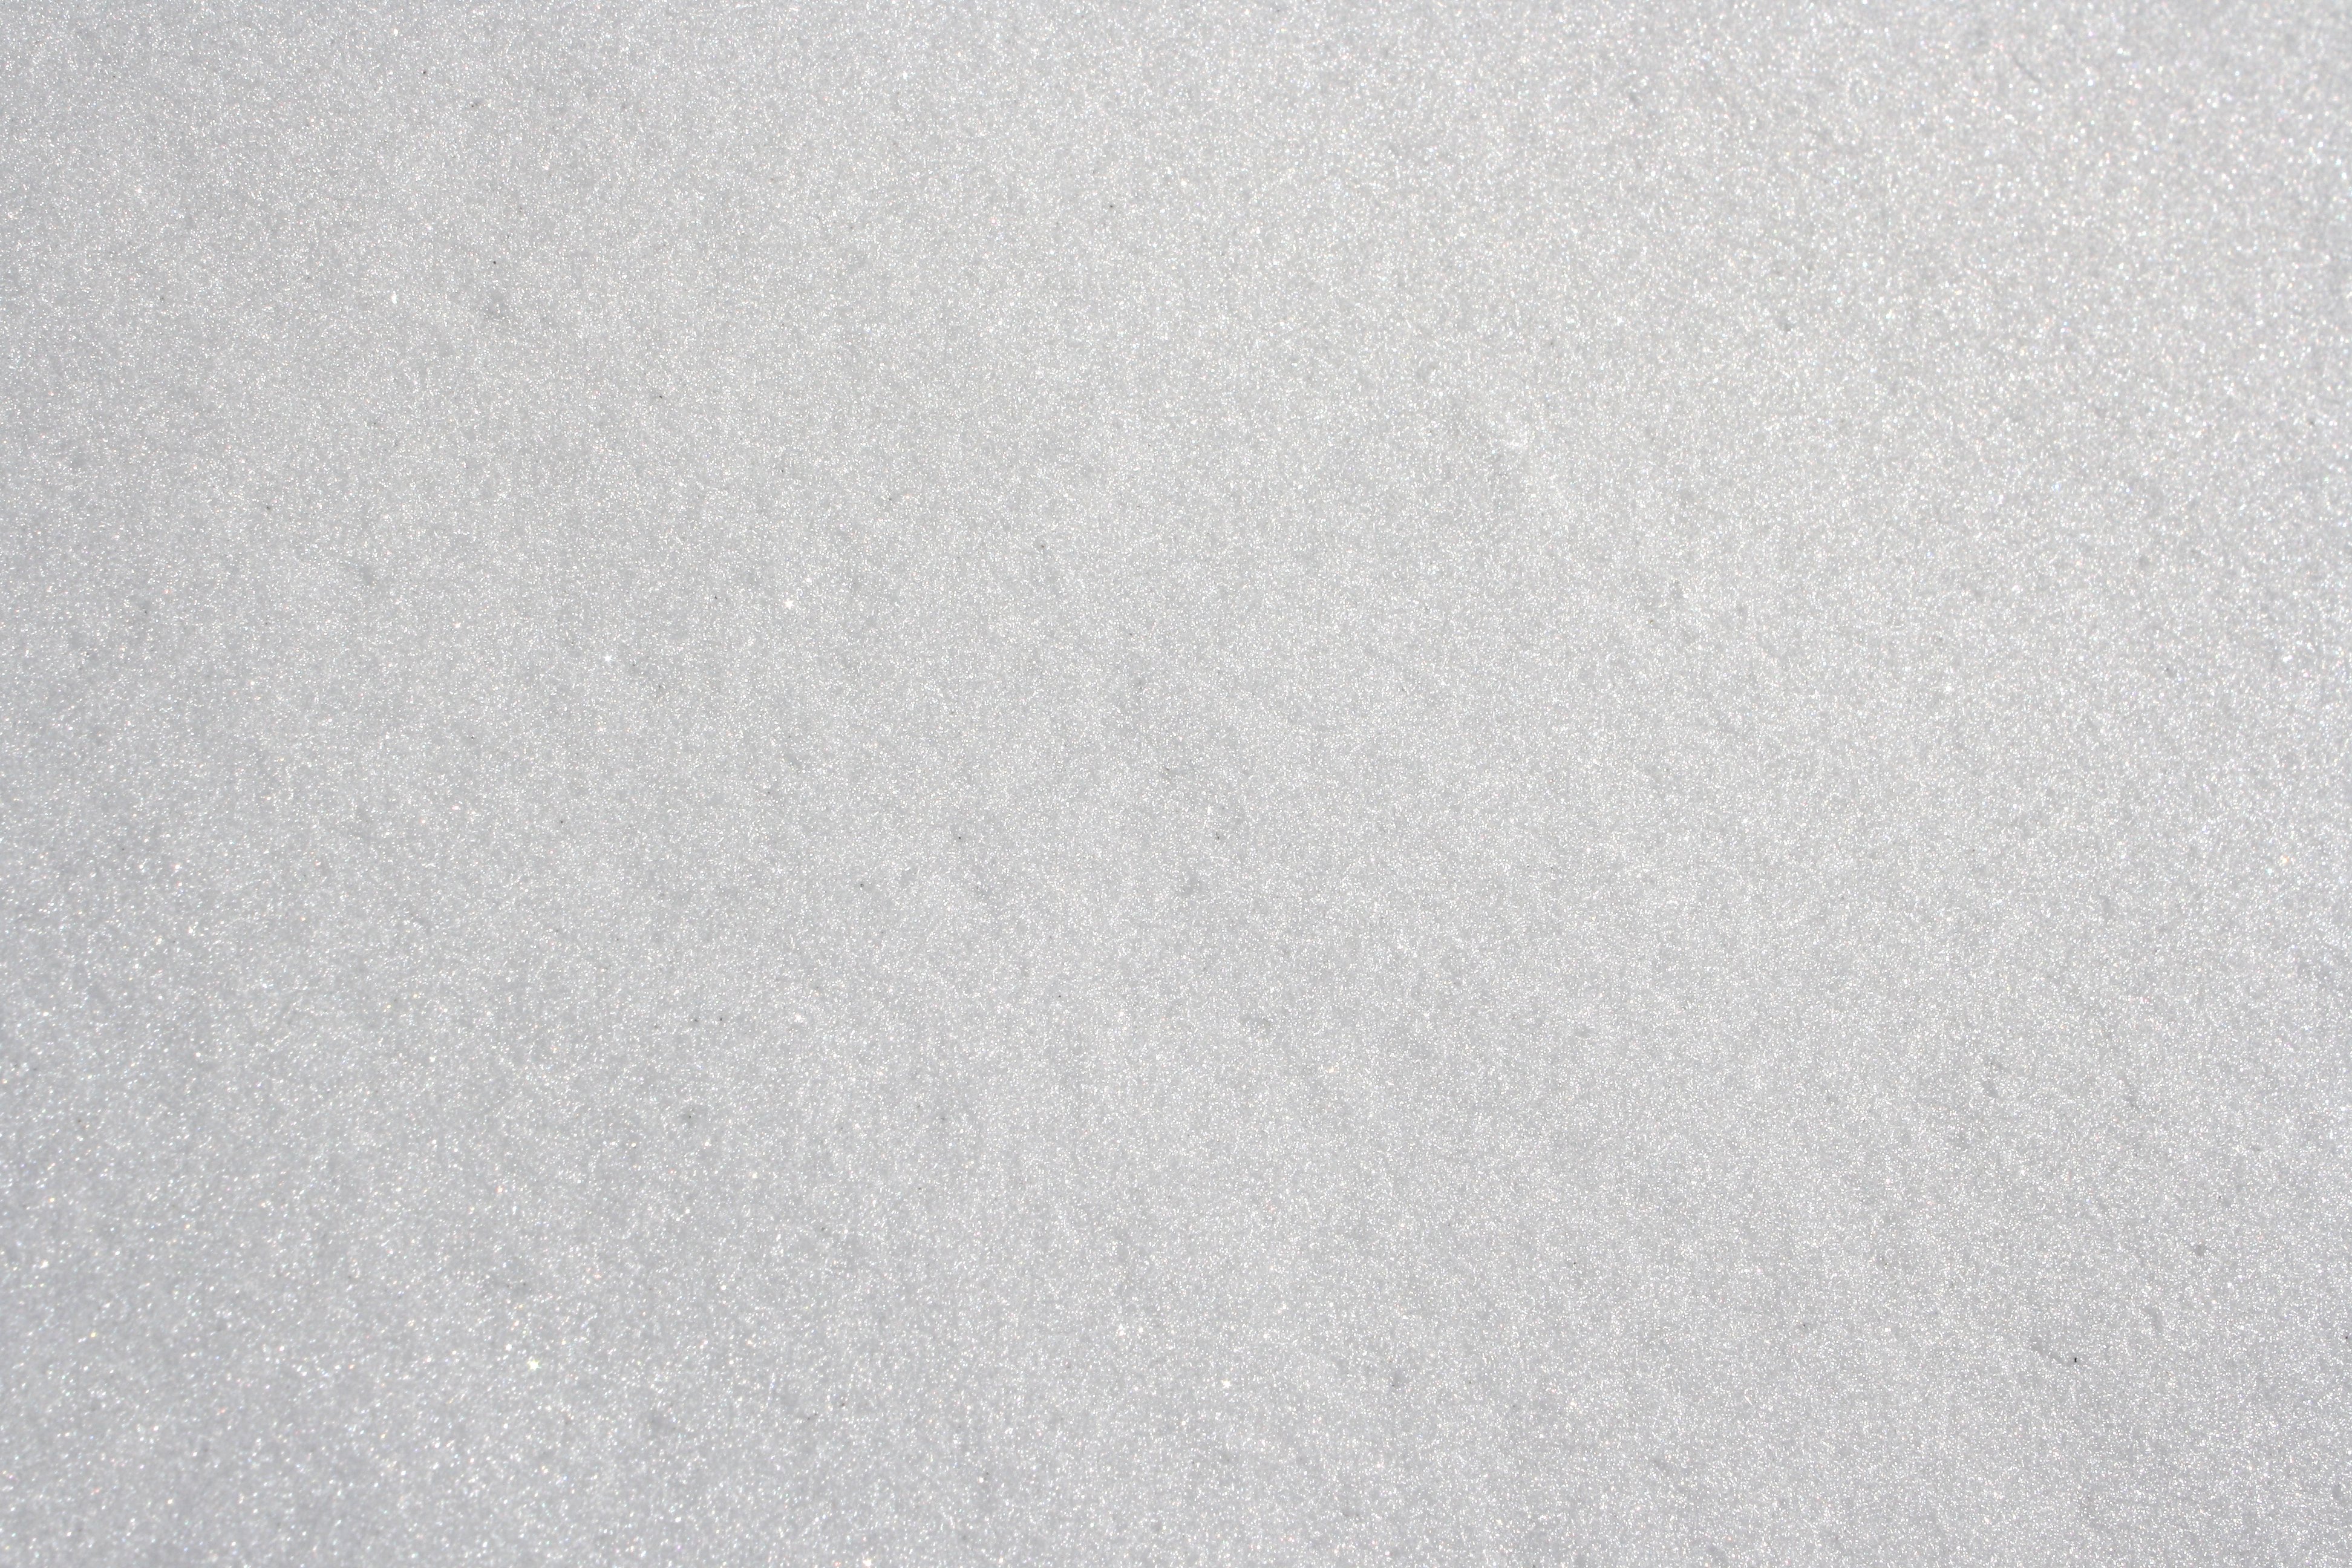 Snow Texture Picture | Free Photograph | Photos Public Domain